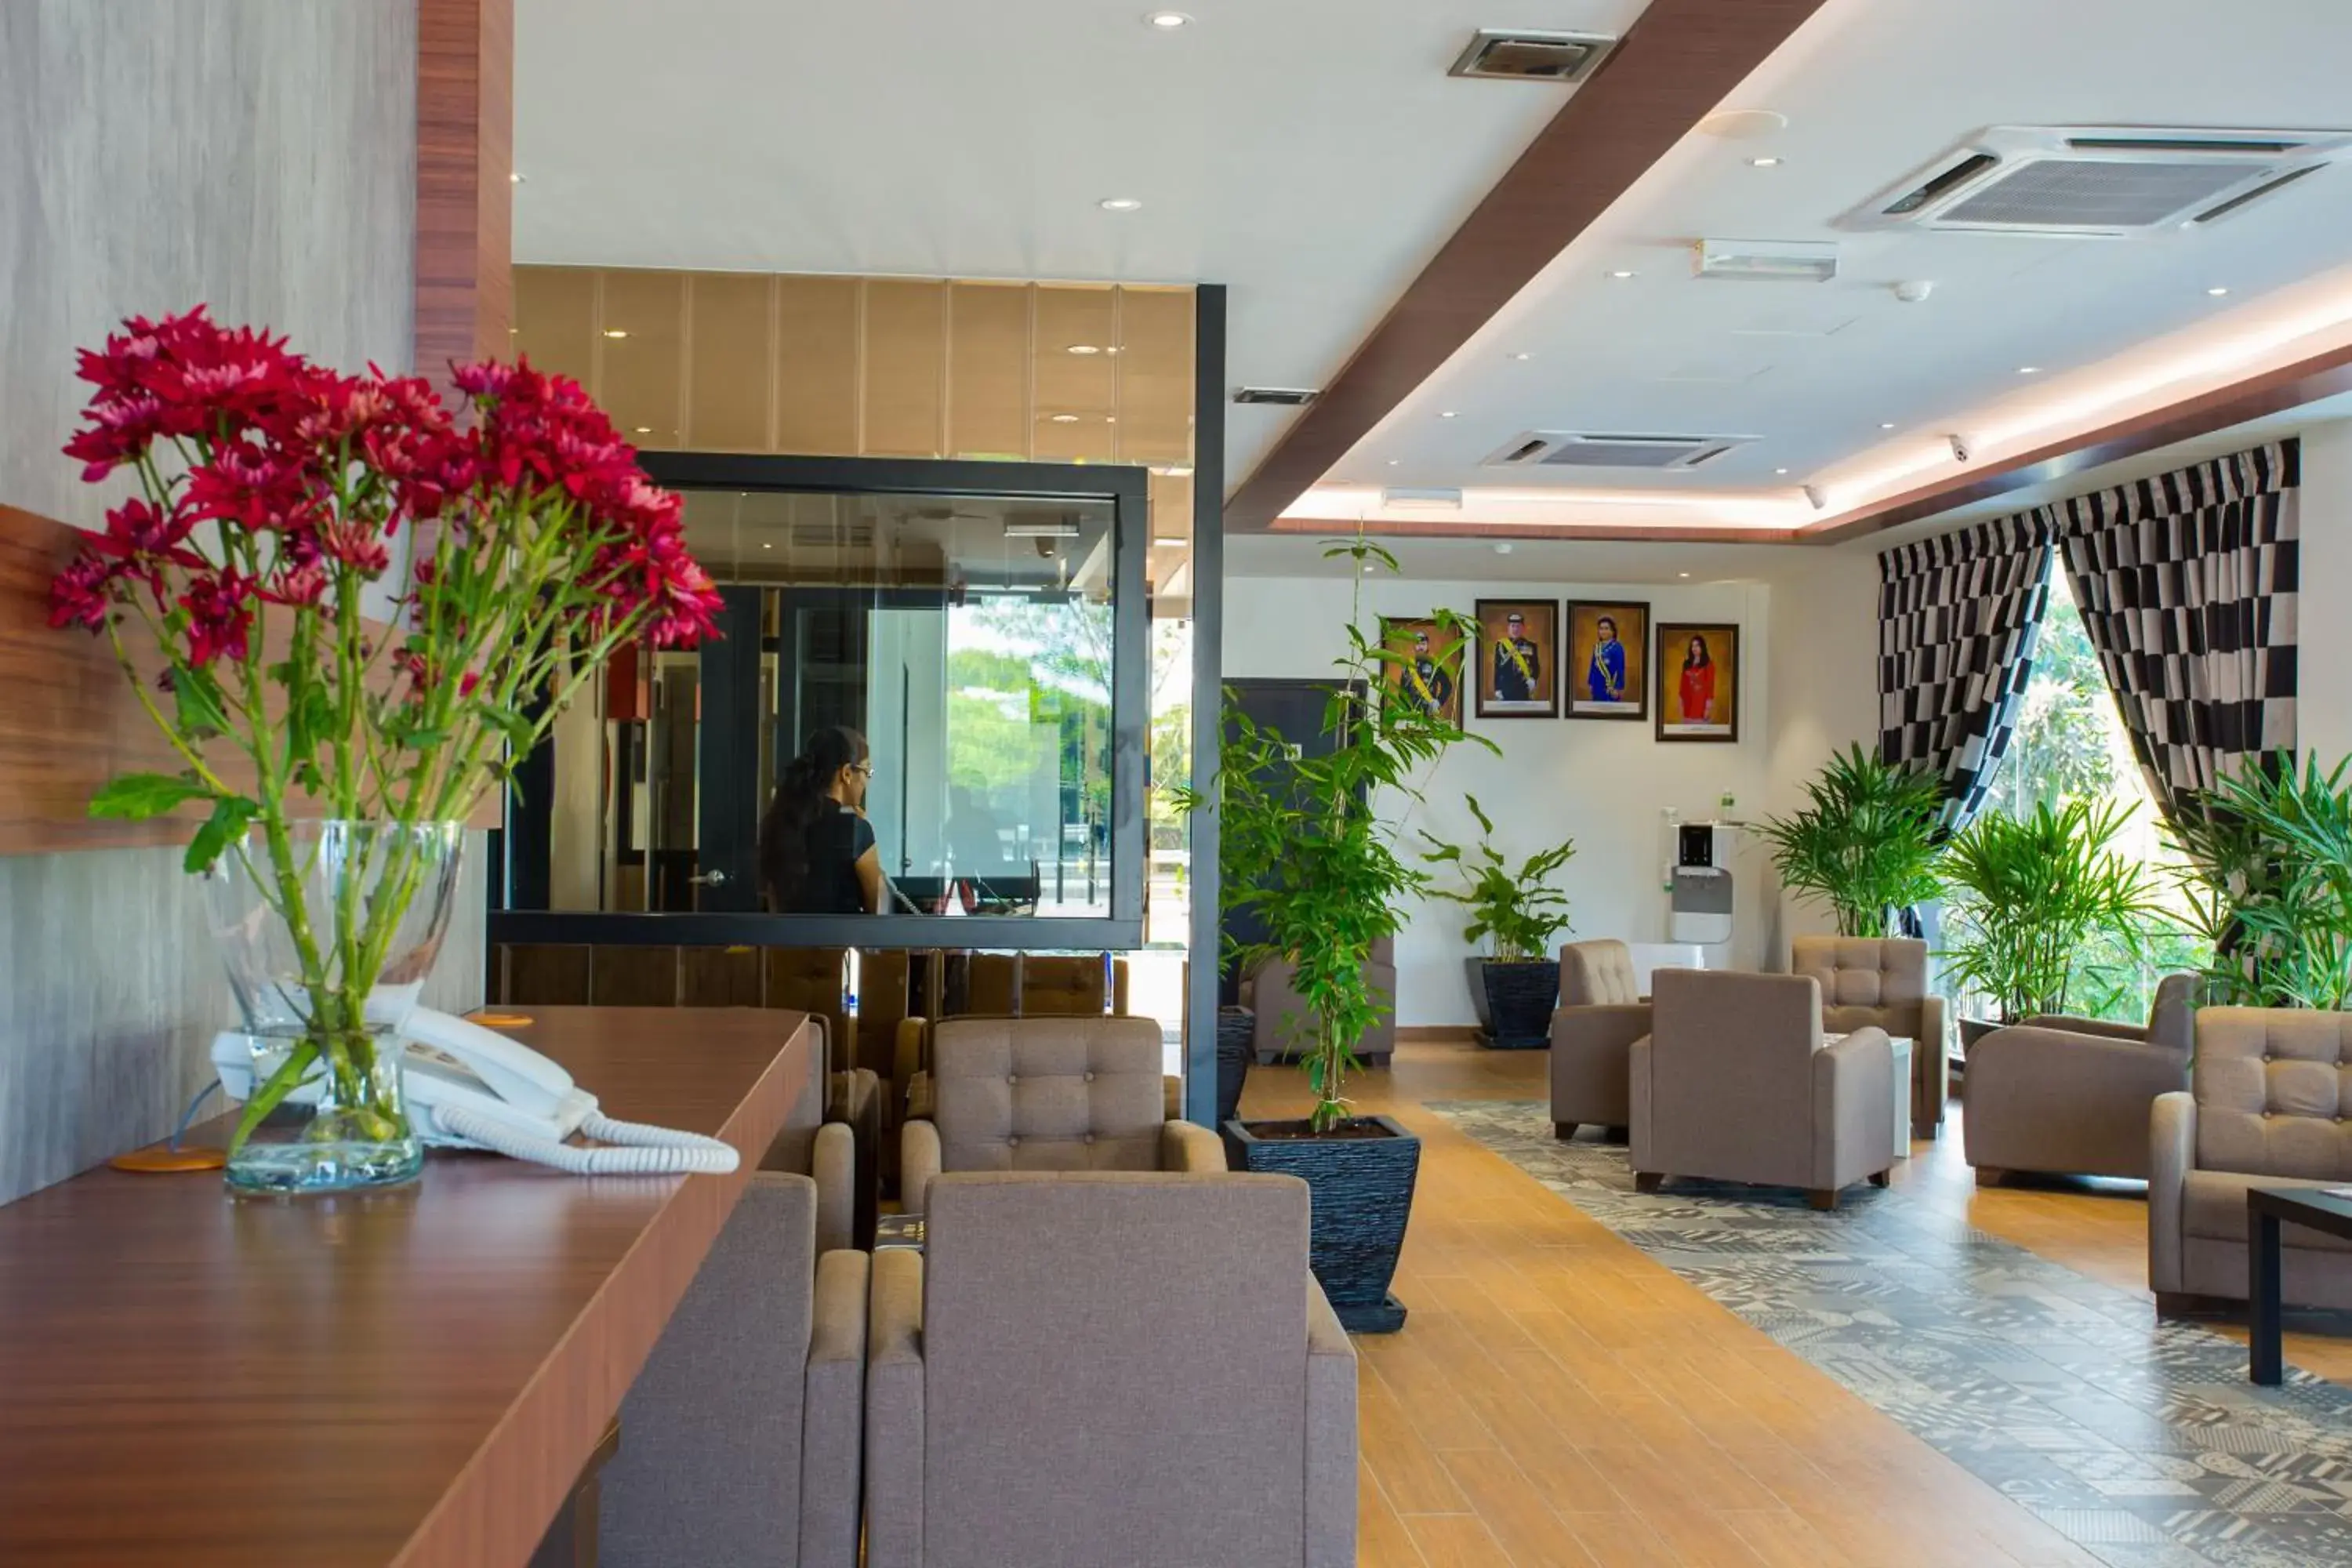 Lobby or reception, Lobby/Reception in Stella Hotel Johor Bahru